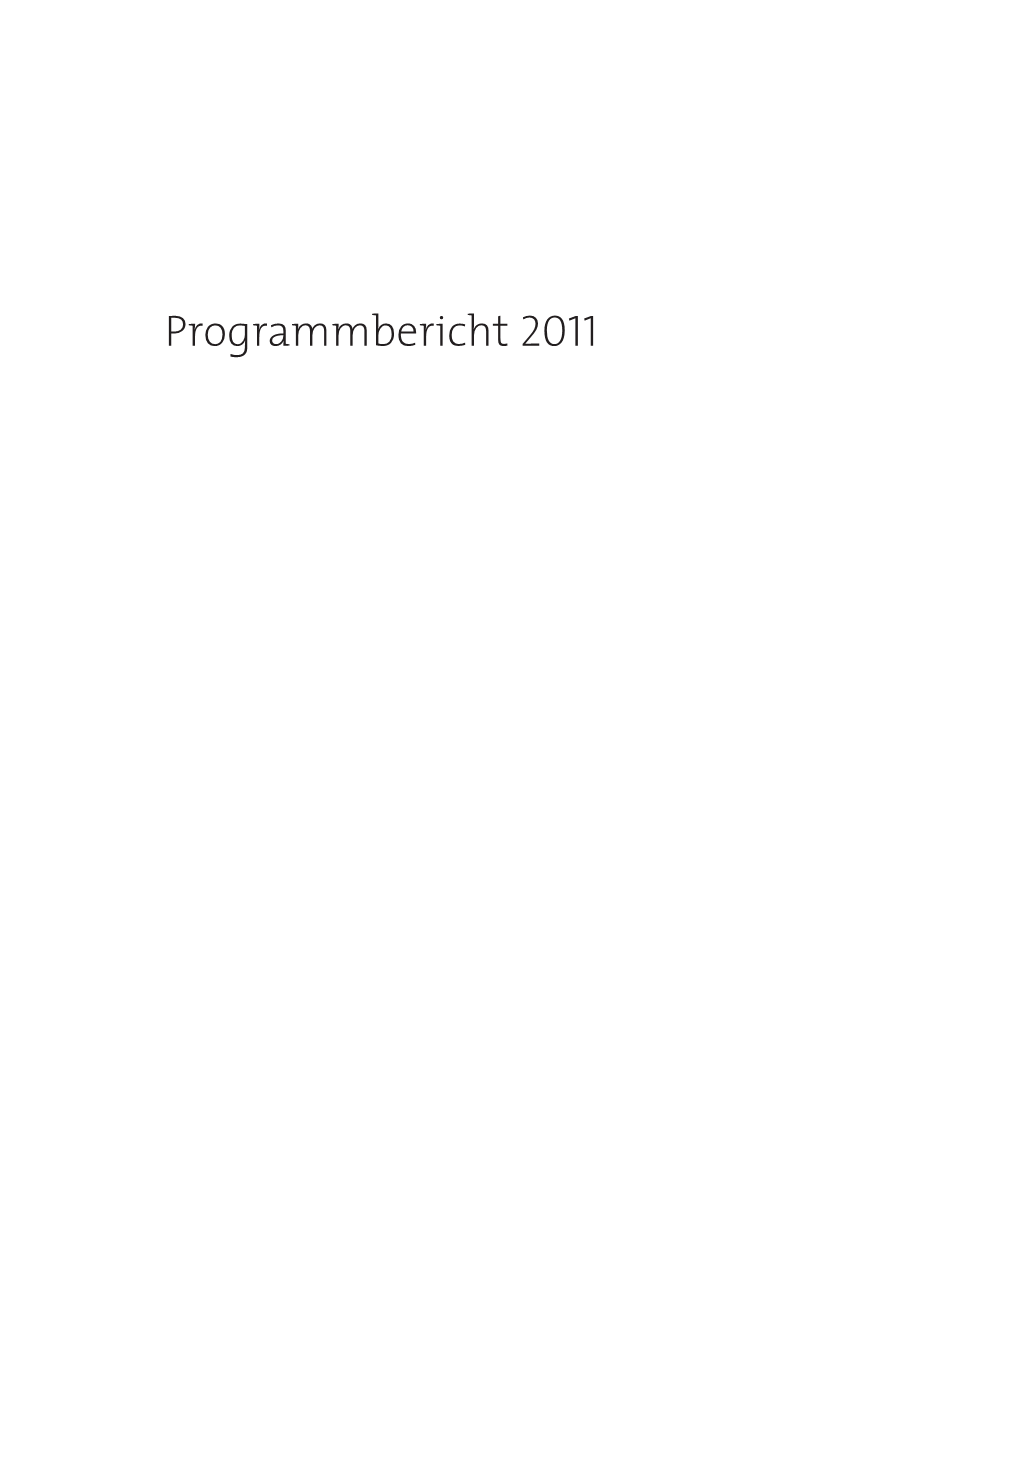 Programmbericht 2011. Fernsehen in Deutschland